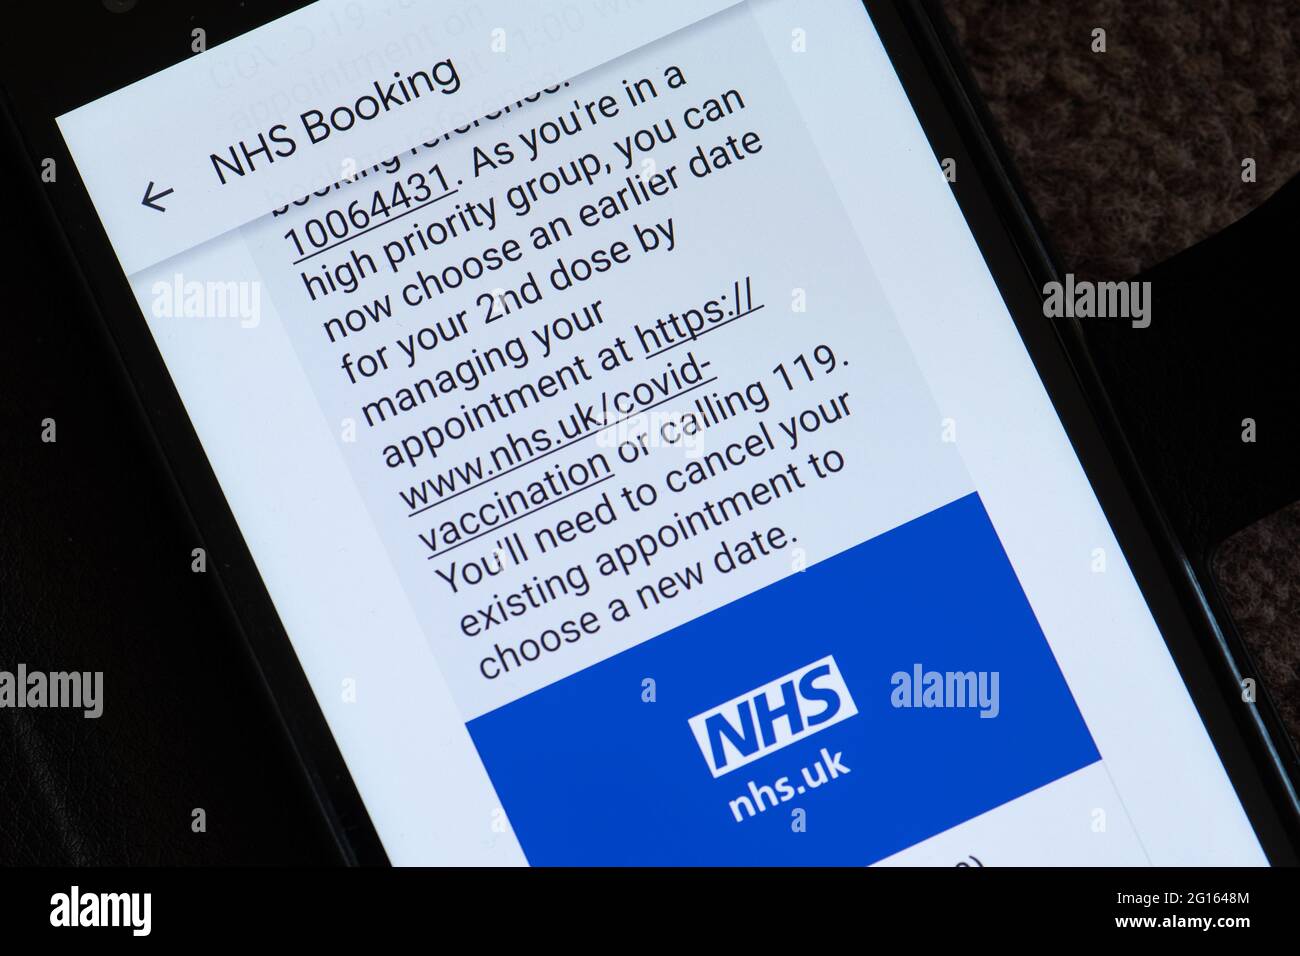 Messaggio di testo da parte dell'NHS che consiglia di prenotare un appuntamento precedente per la seconda vaccinazione di covidio come nel gruppo ad alta priorità (oltre 50 anni), Regno Unito, giugno 2021 Foto Stock